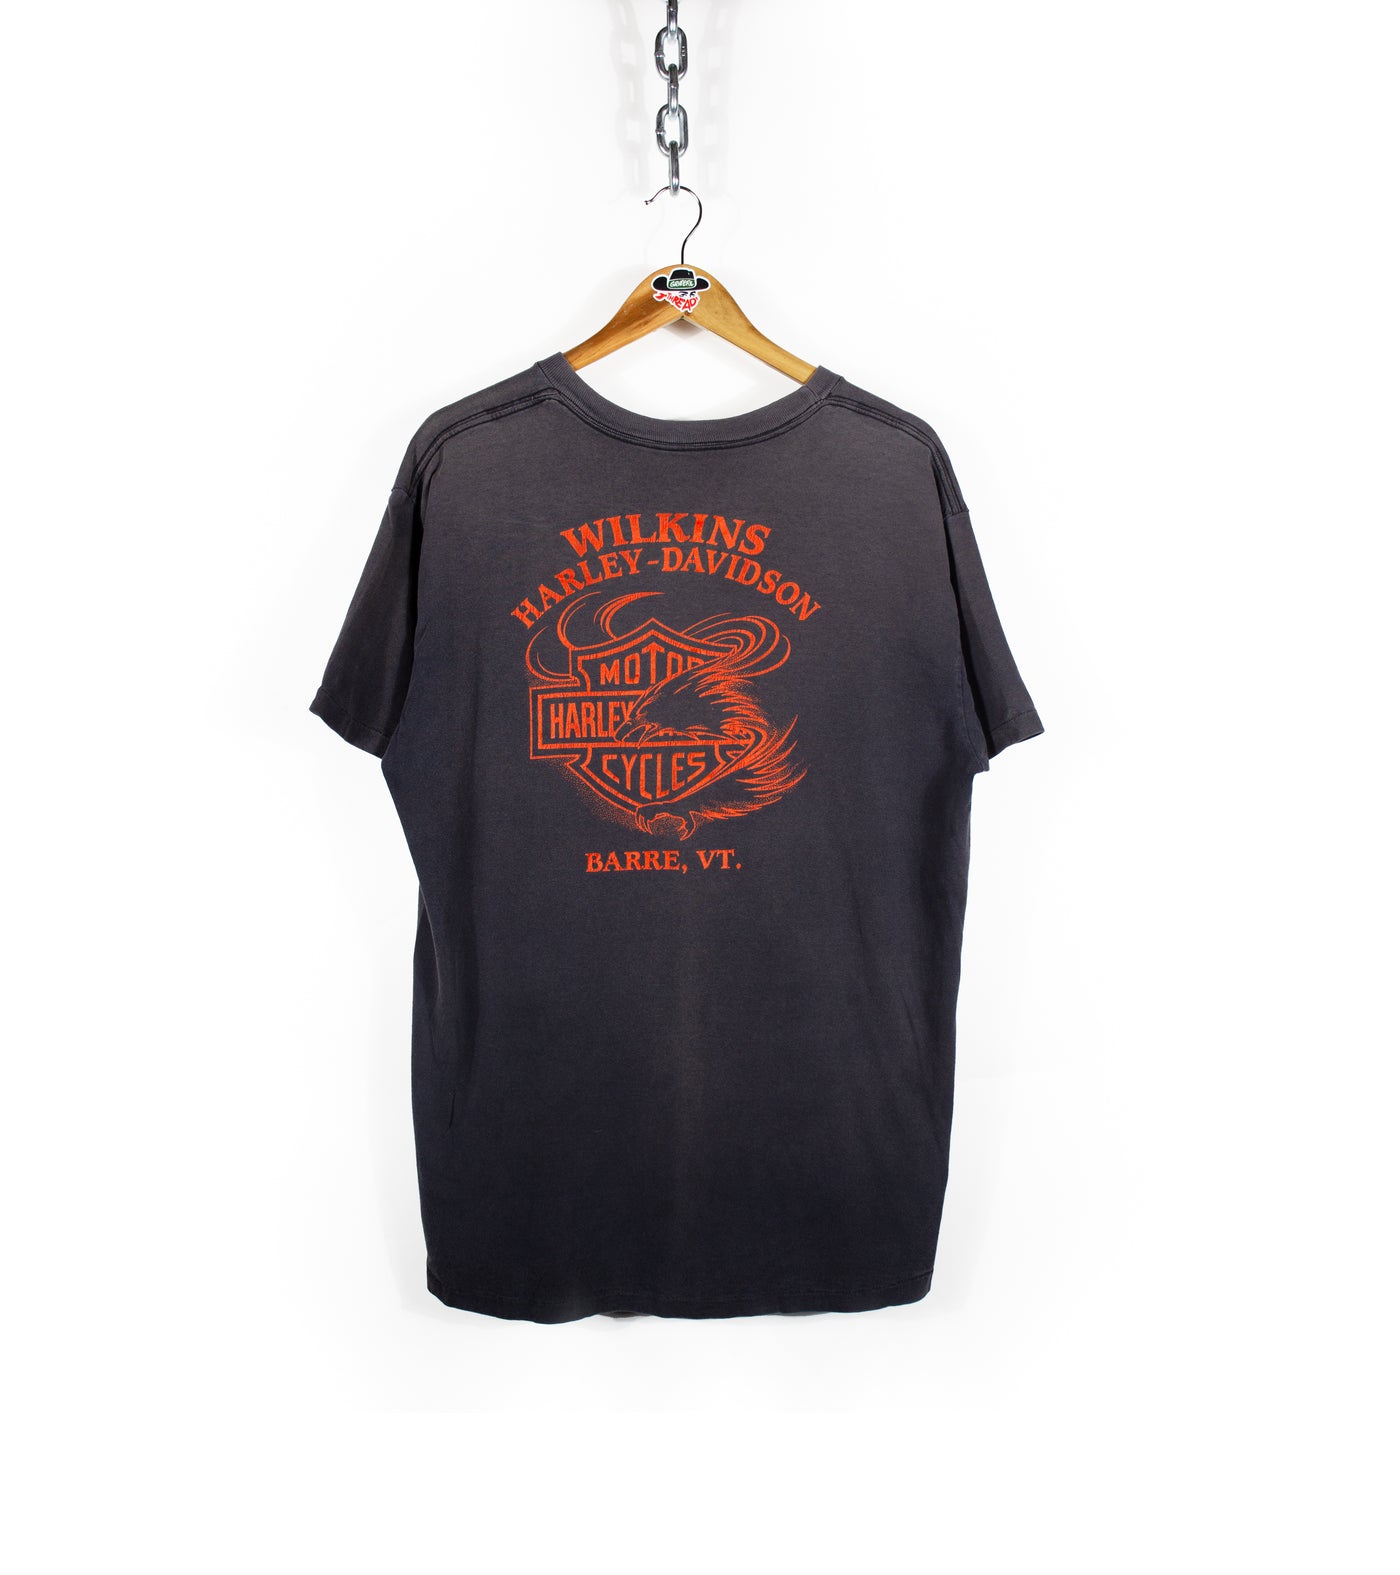 Vintage 80s Harley Davidson Barre, VT Pocket T-Shirt